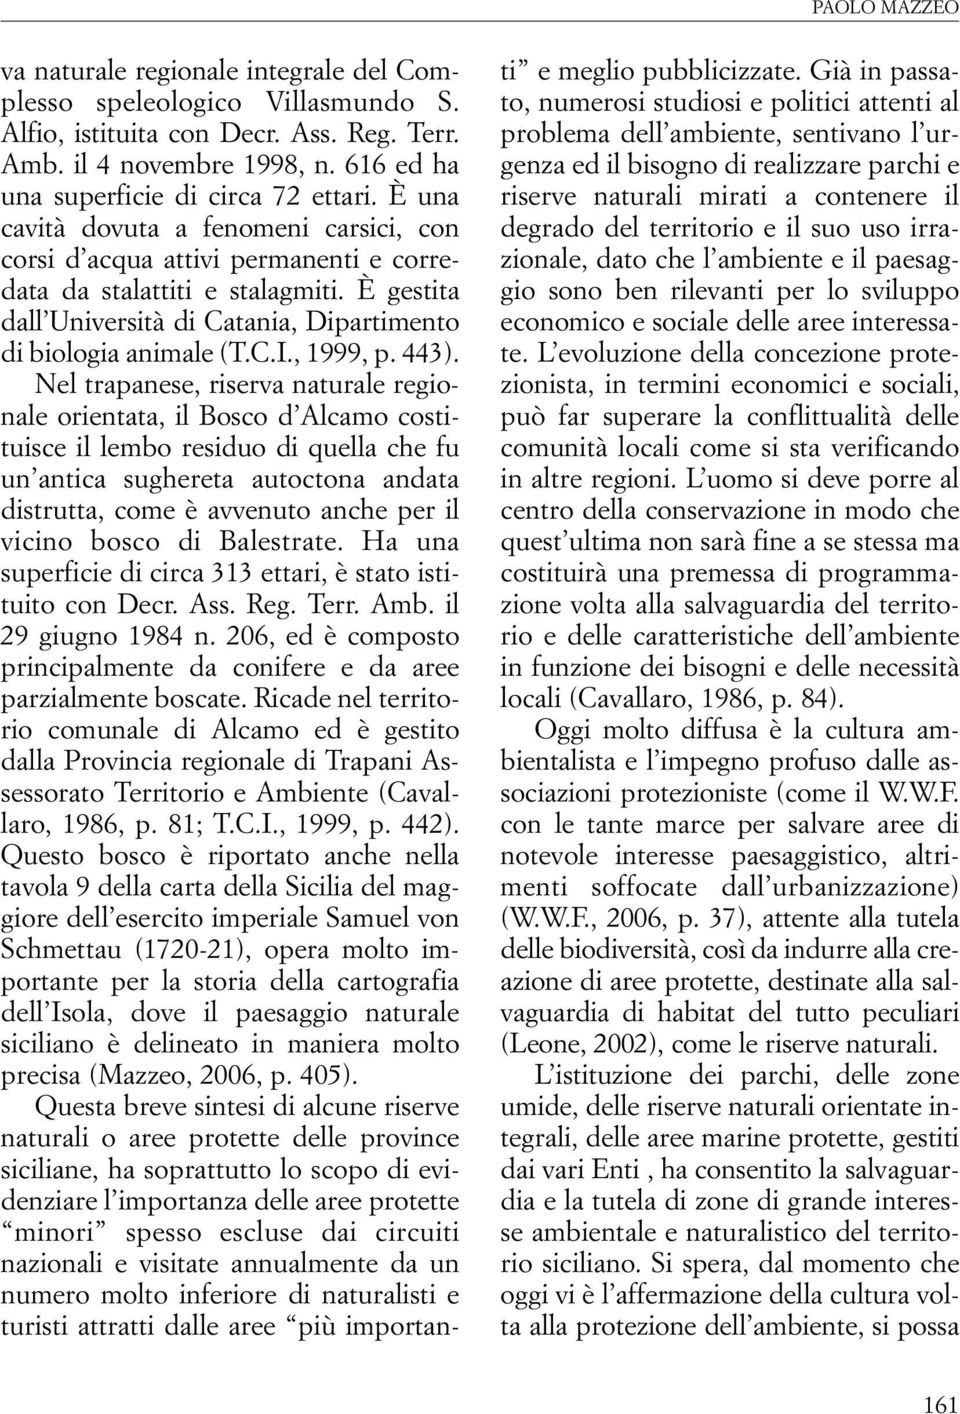 È gestita dall Università di Catania, Dipartimento di biologia animale (T.C.I., 1999, p. 443).